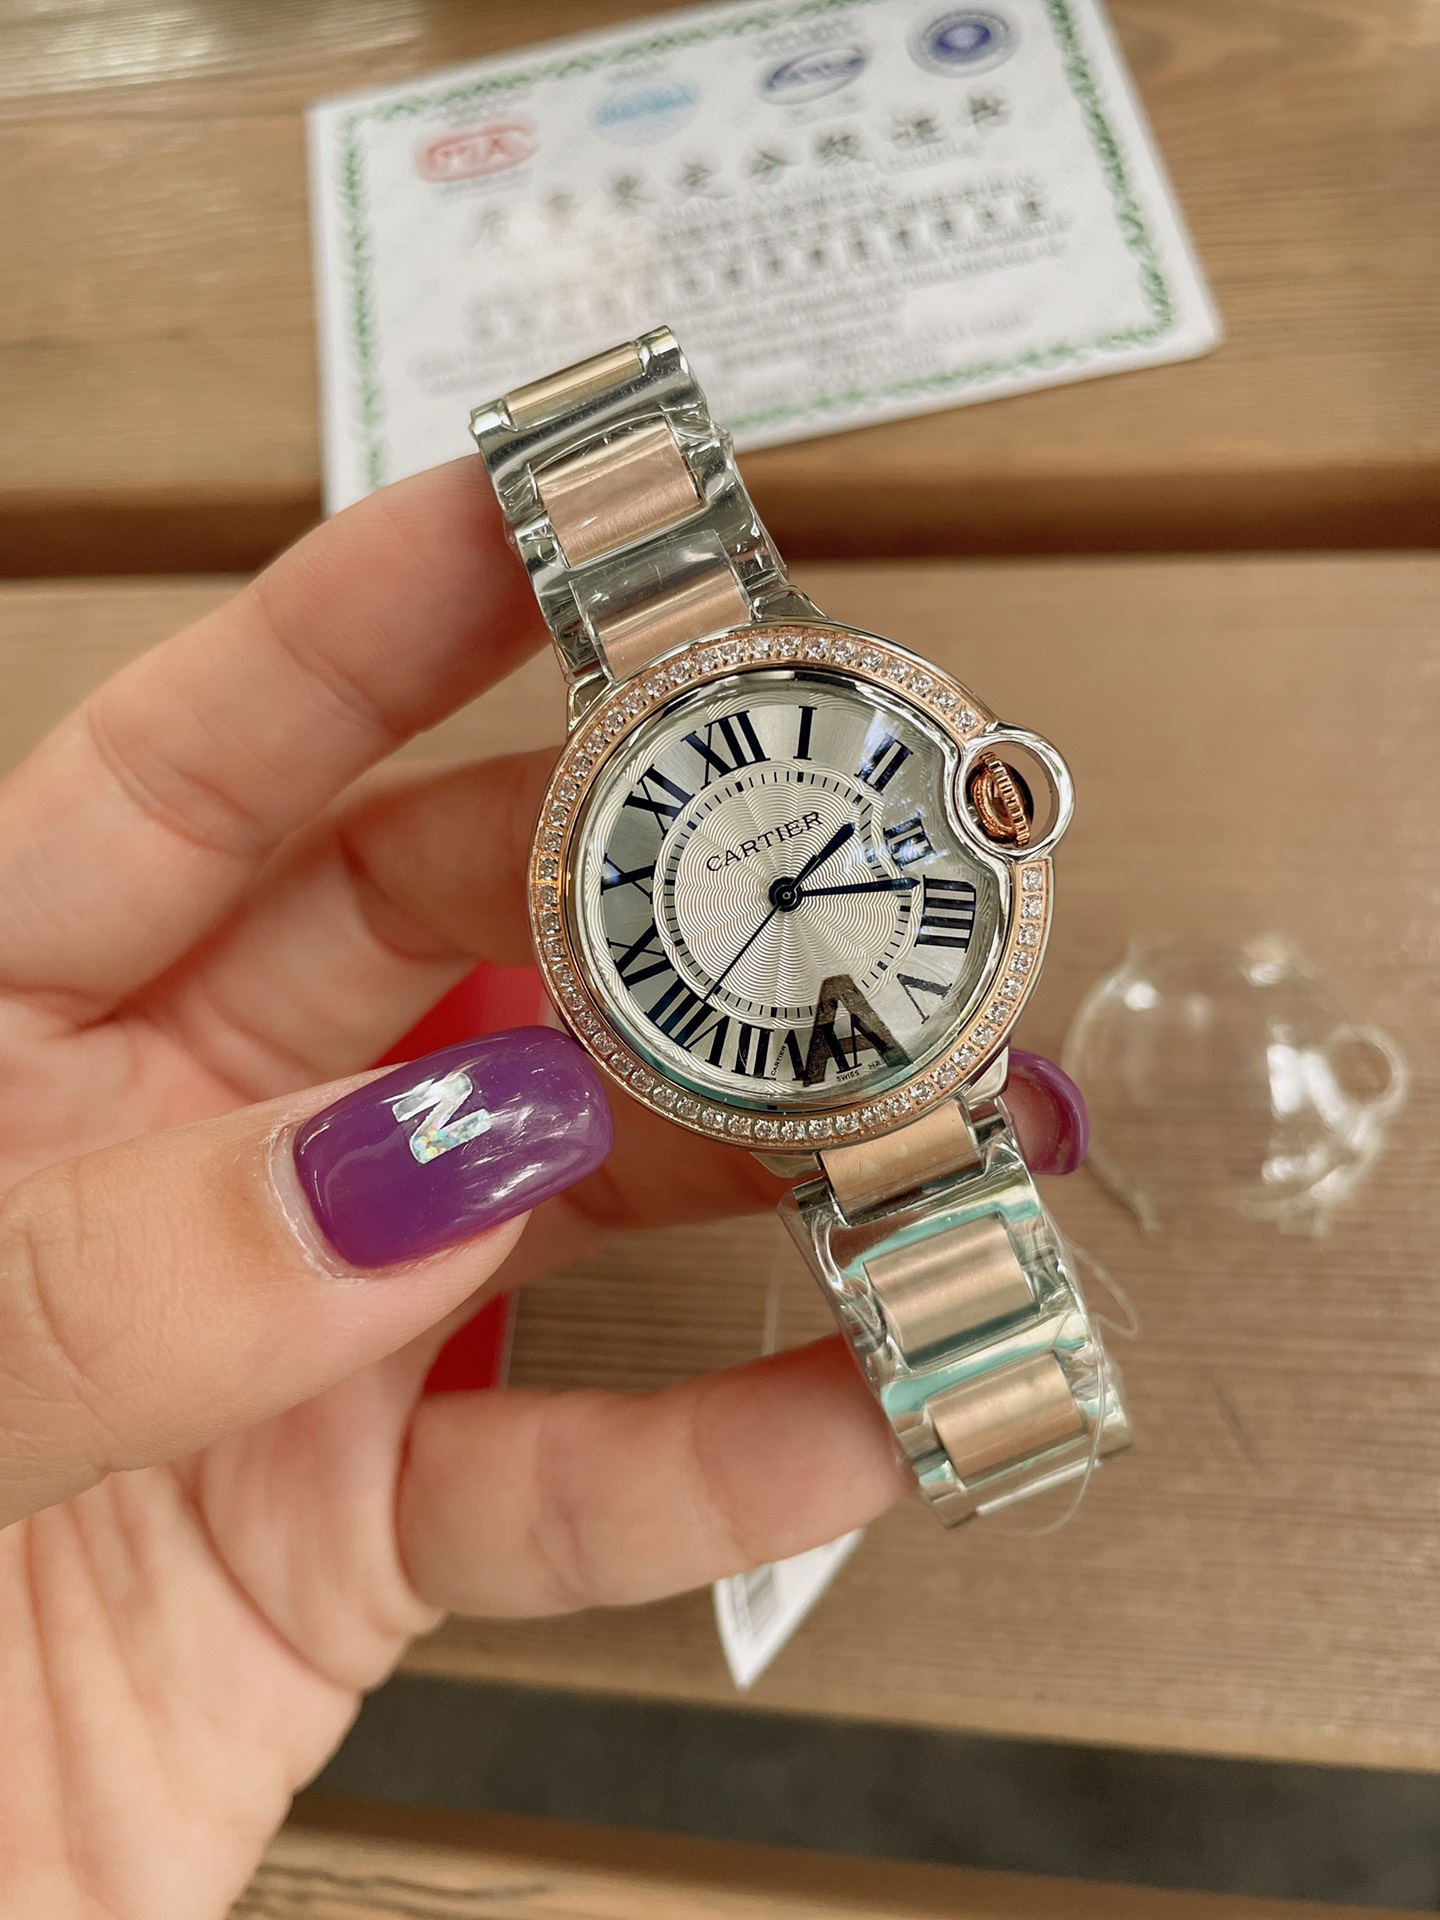 「ダイヤモンドなし」CARTIERカルティエ 時計 中身コピー フランス 薄い腕時計 軽量 レディース 最新商品 _3